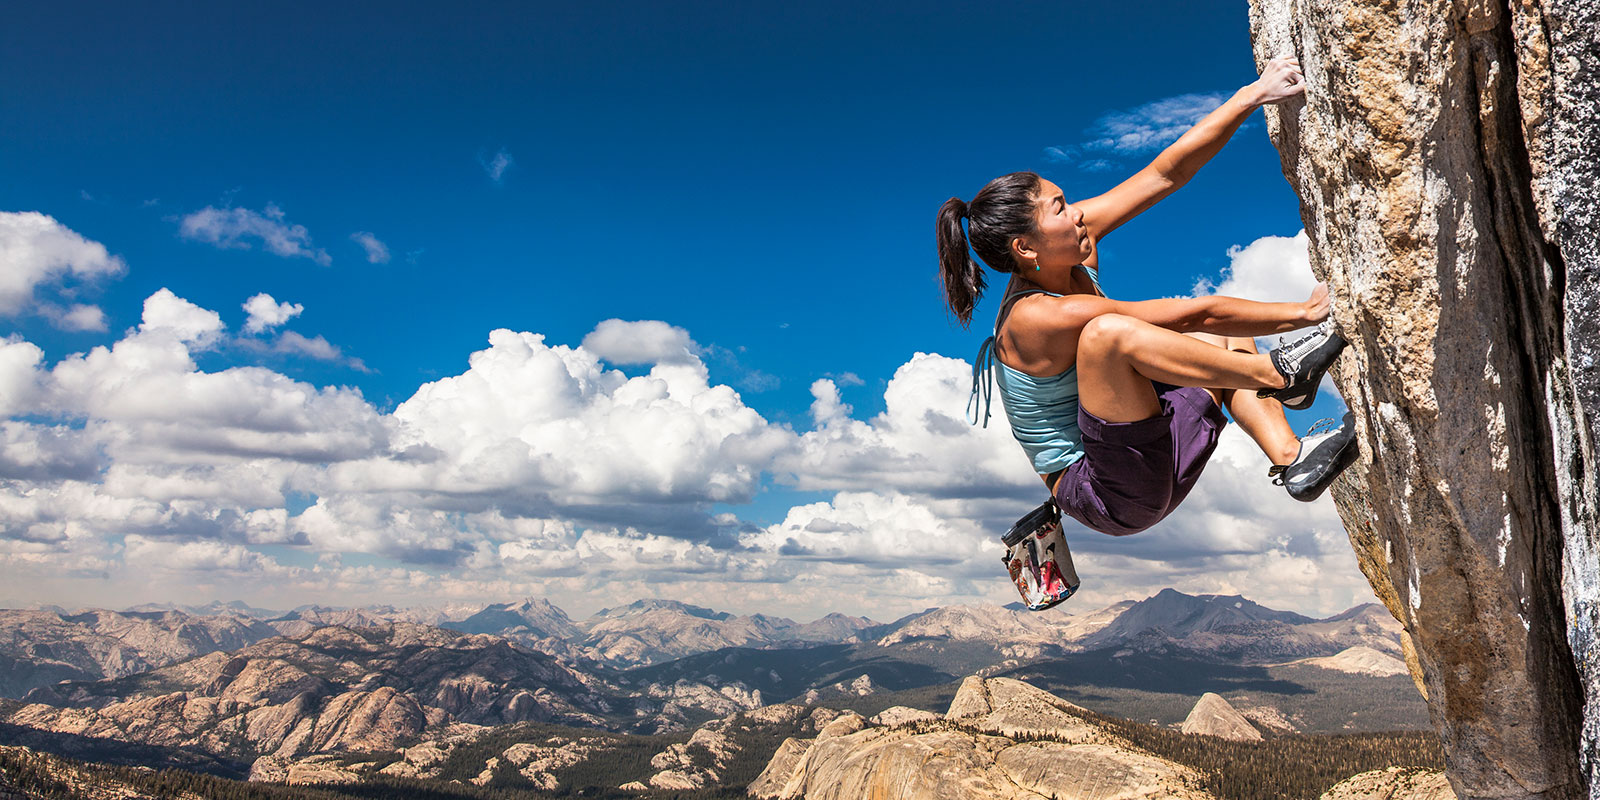 woman climbing a steep mountain rock face